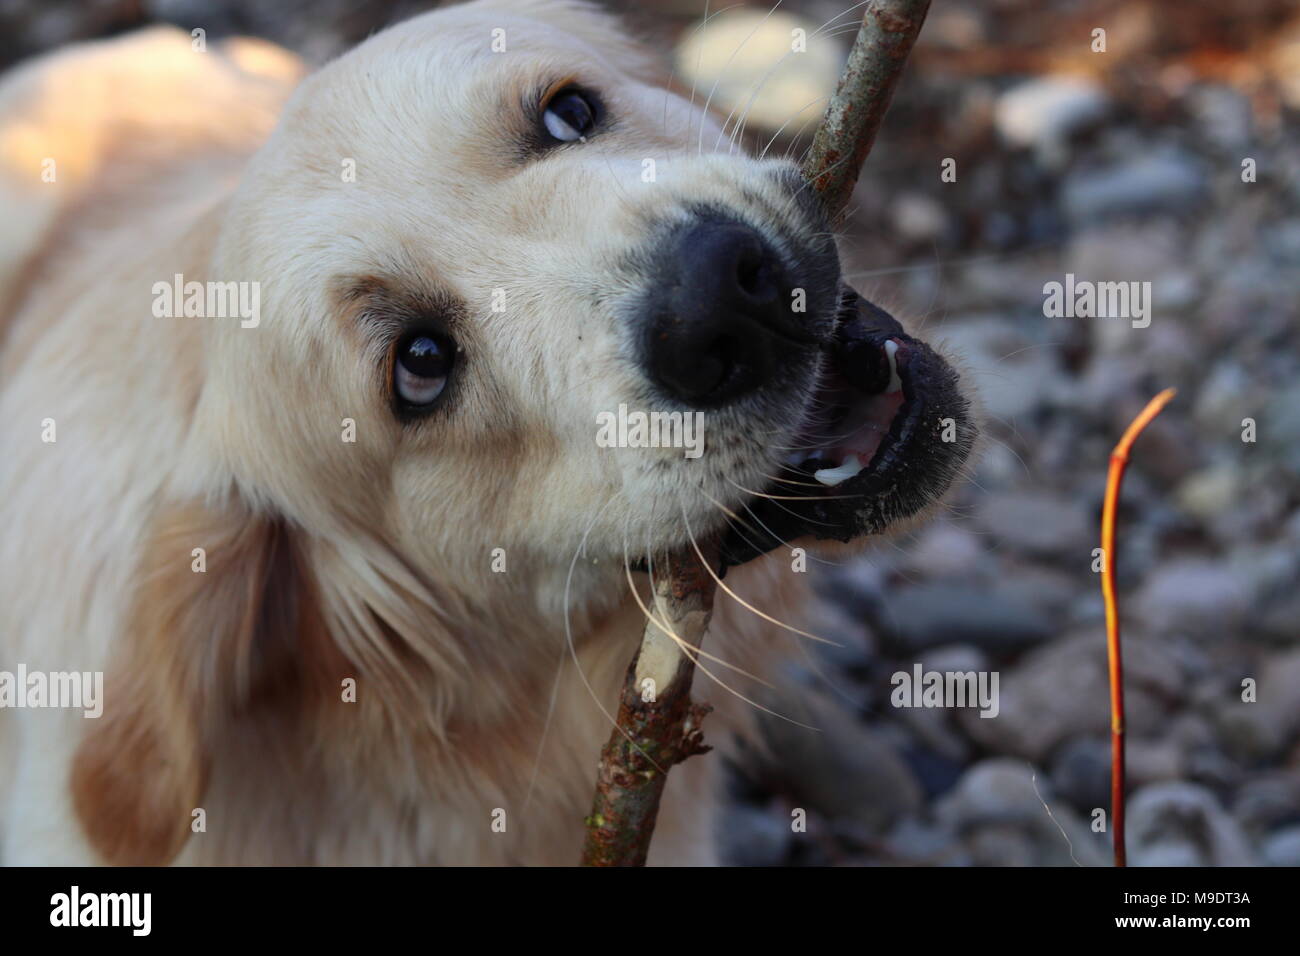 Hund, Golden Retriever mit Stick in Mund, Blick nach oben, in der Natur, Porträt, Nahaufnahme Stockfoto